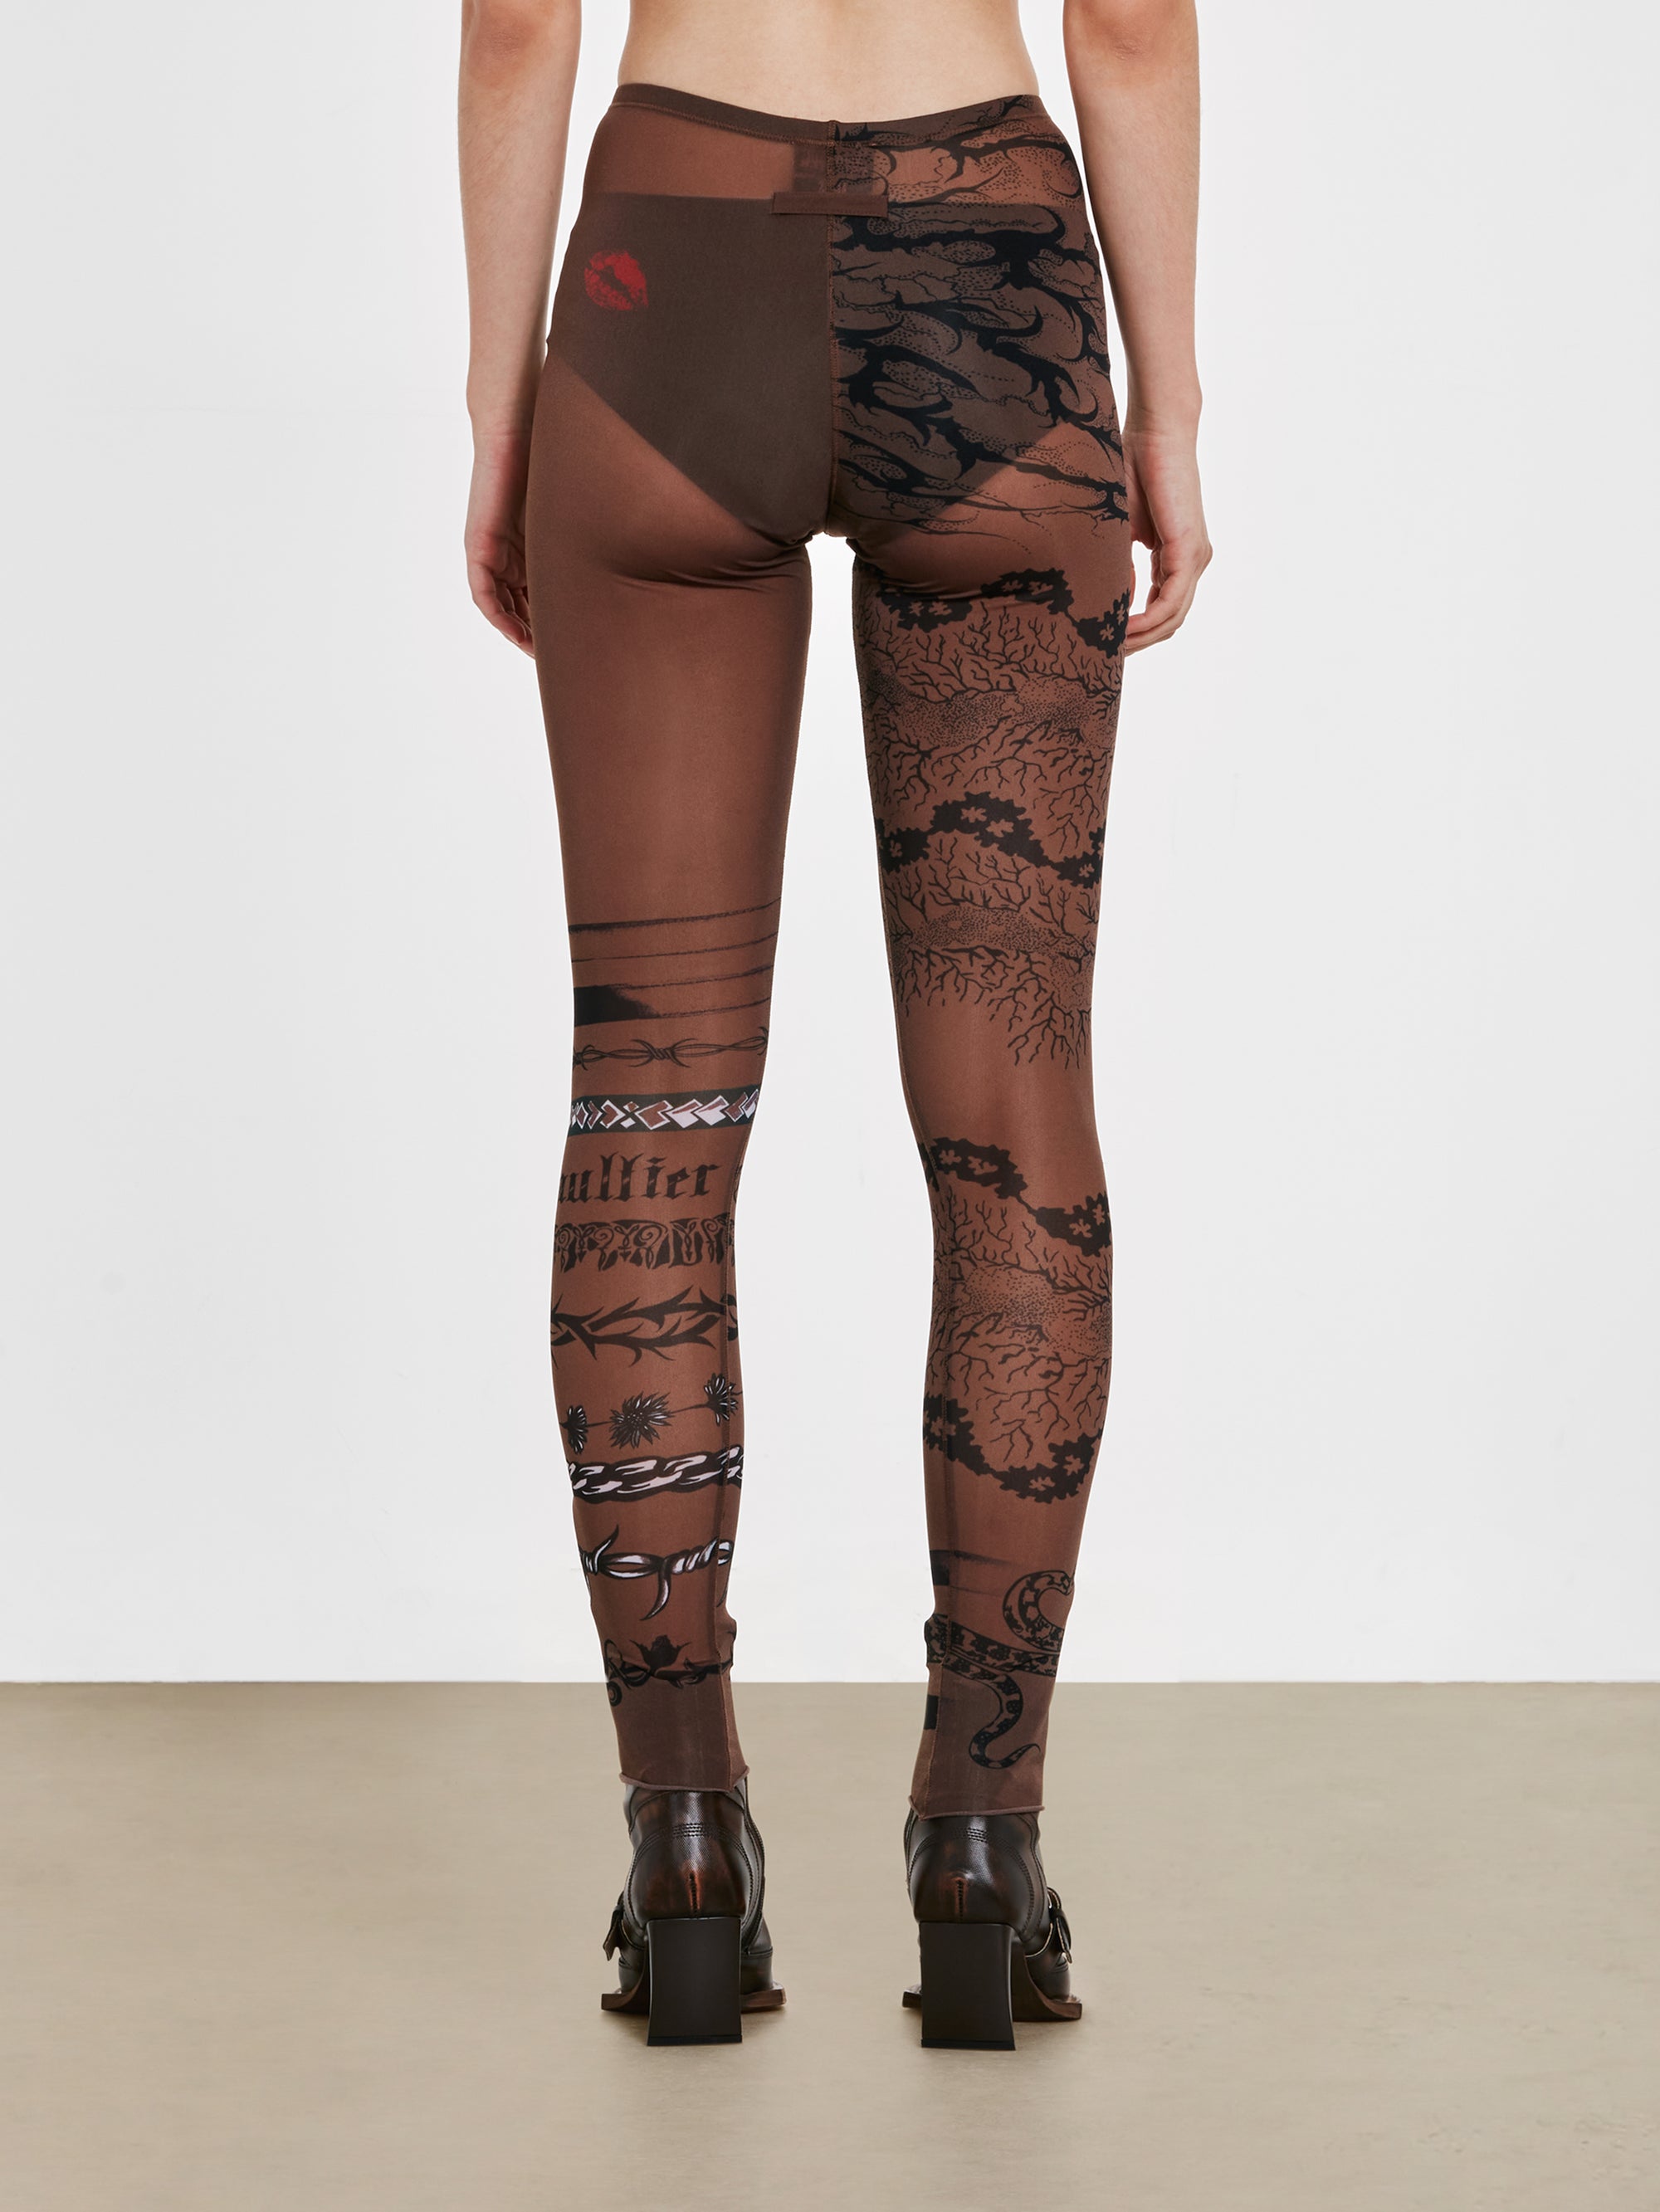 Jean Paul Gaultier - KNWLS Women’s Trompe L’Oeil Tattoo Print Leggings - (Ebony/Grey/Black) view 3